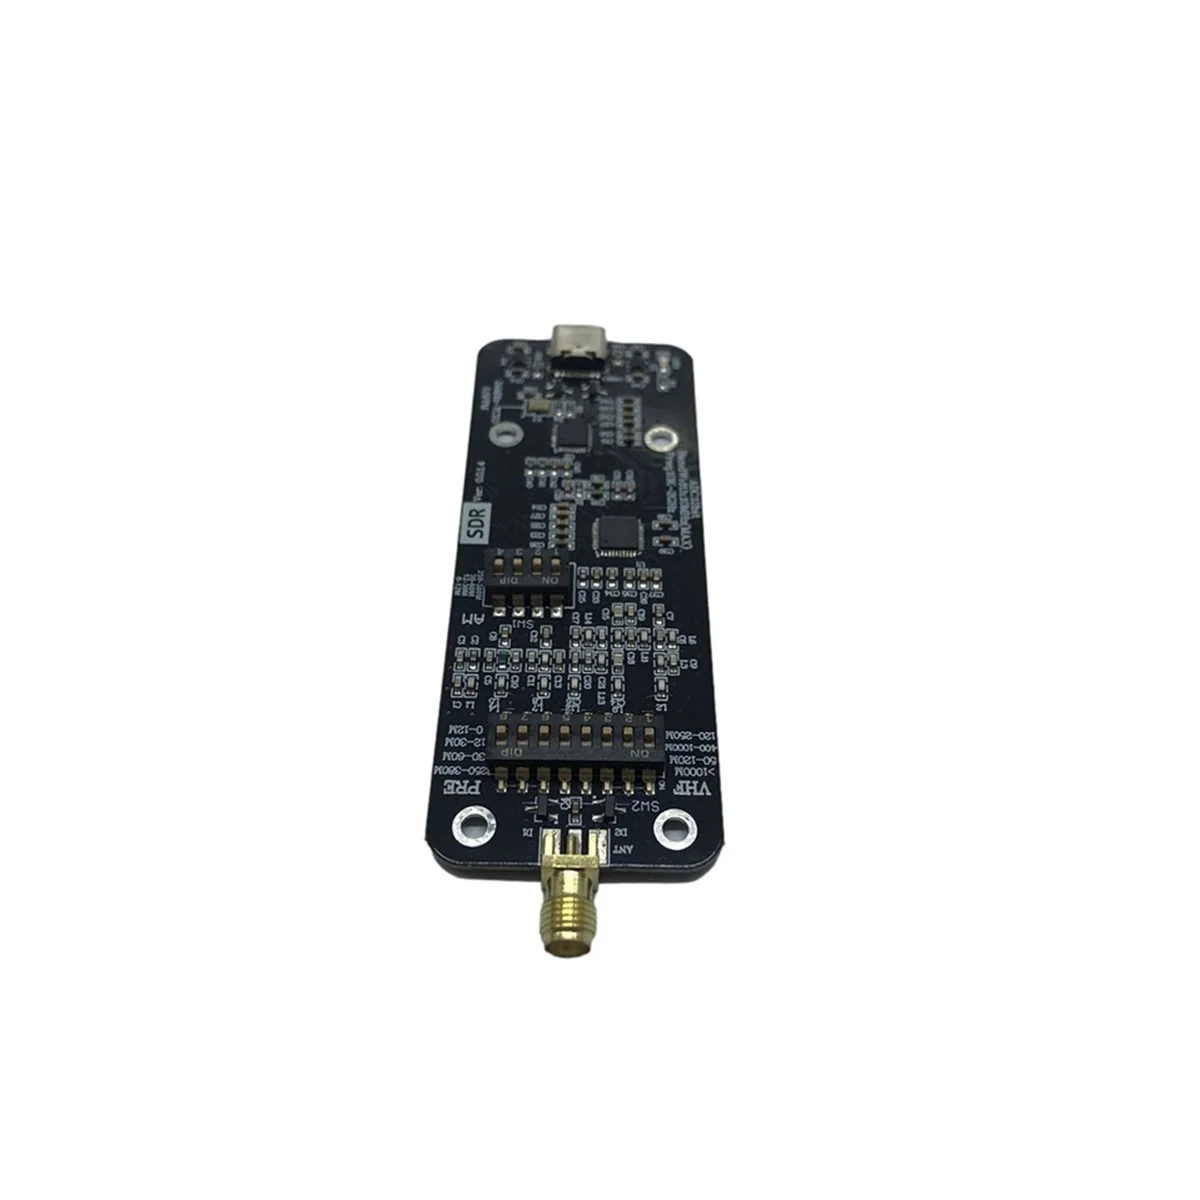 Схема RSP1 Msi2500 Msi001 Программно Определяемый радиоприемник 12 Битный модуль приема радиоприемников с АЦП Схема DIY Electronic 0